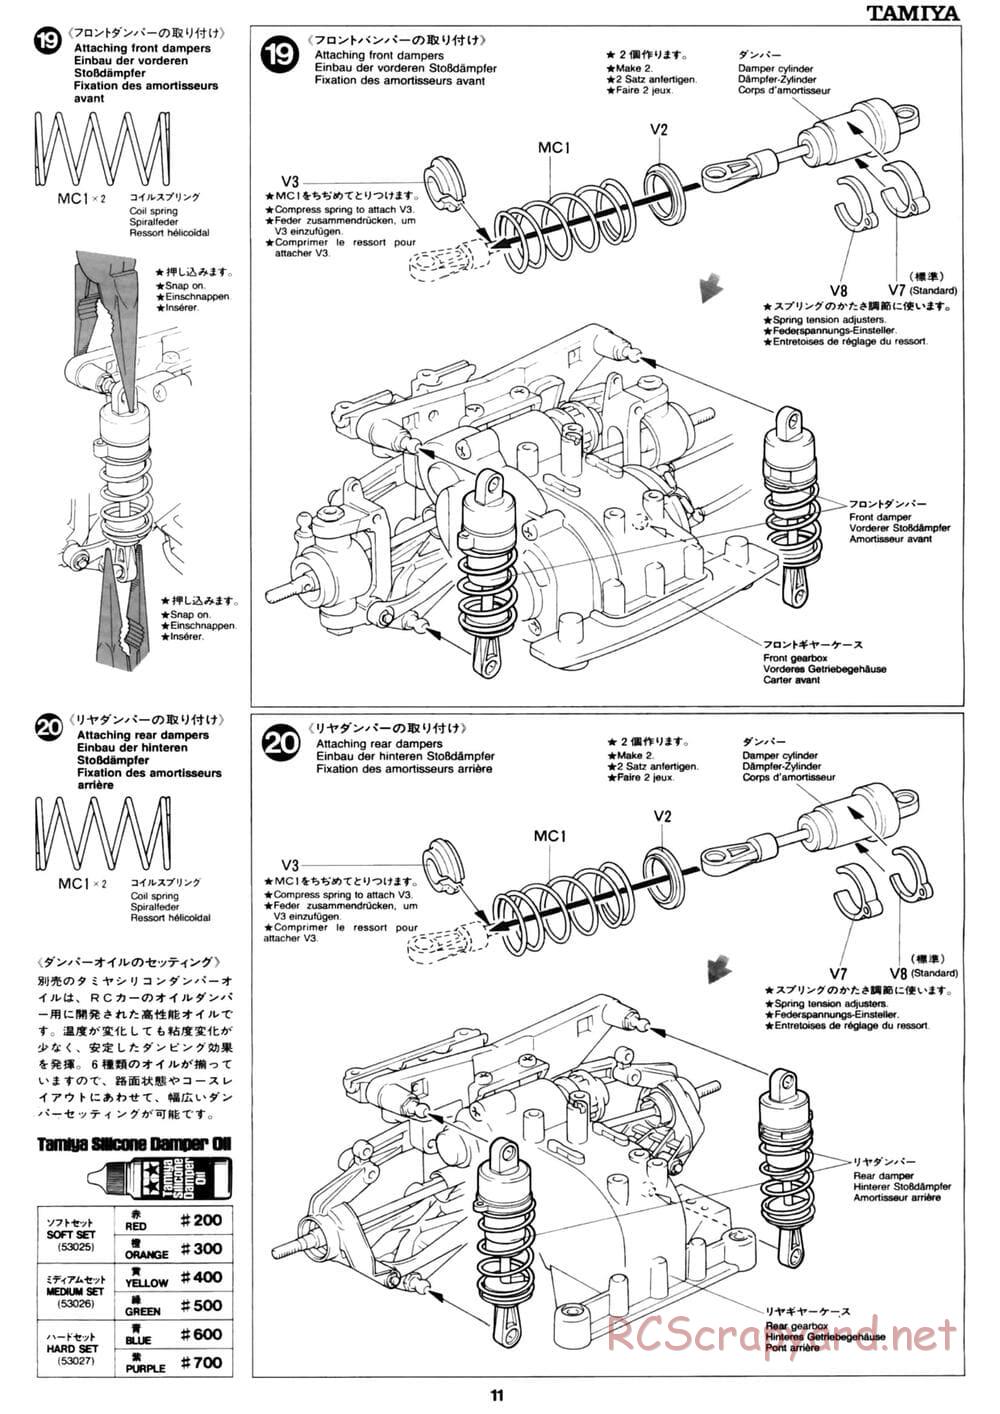 Tamiya - David Jun TA03F Pro Chassis - Manual - Page 11